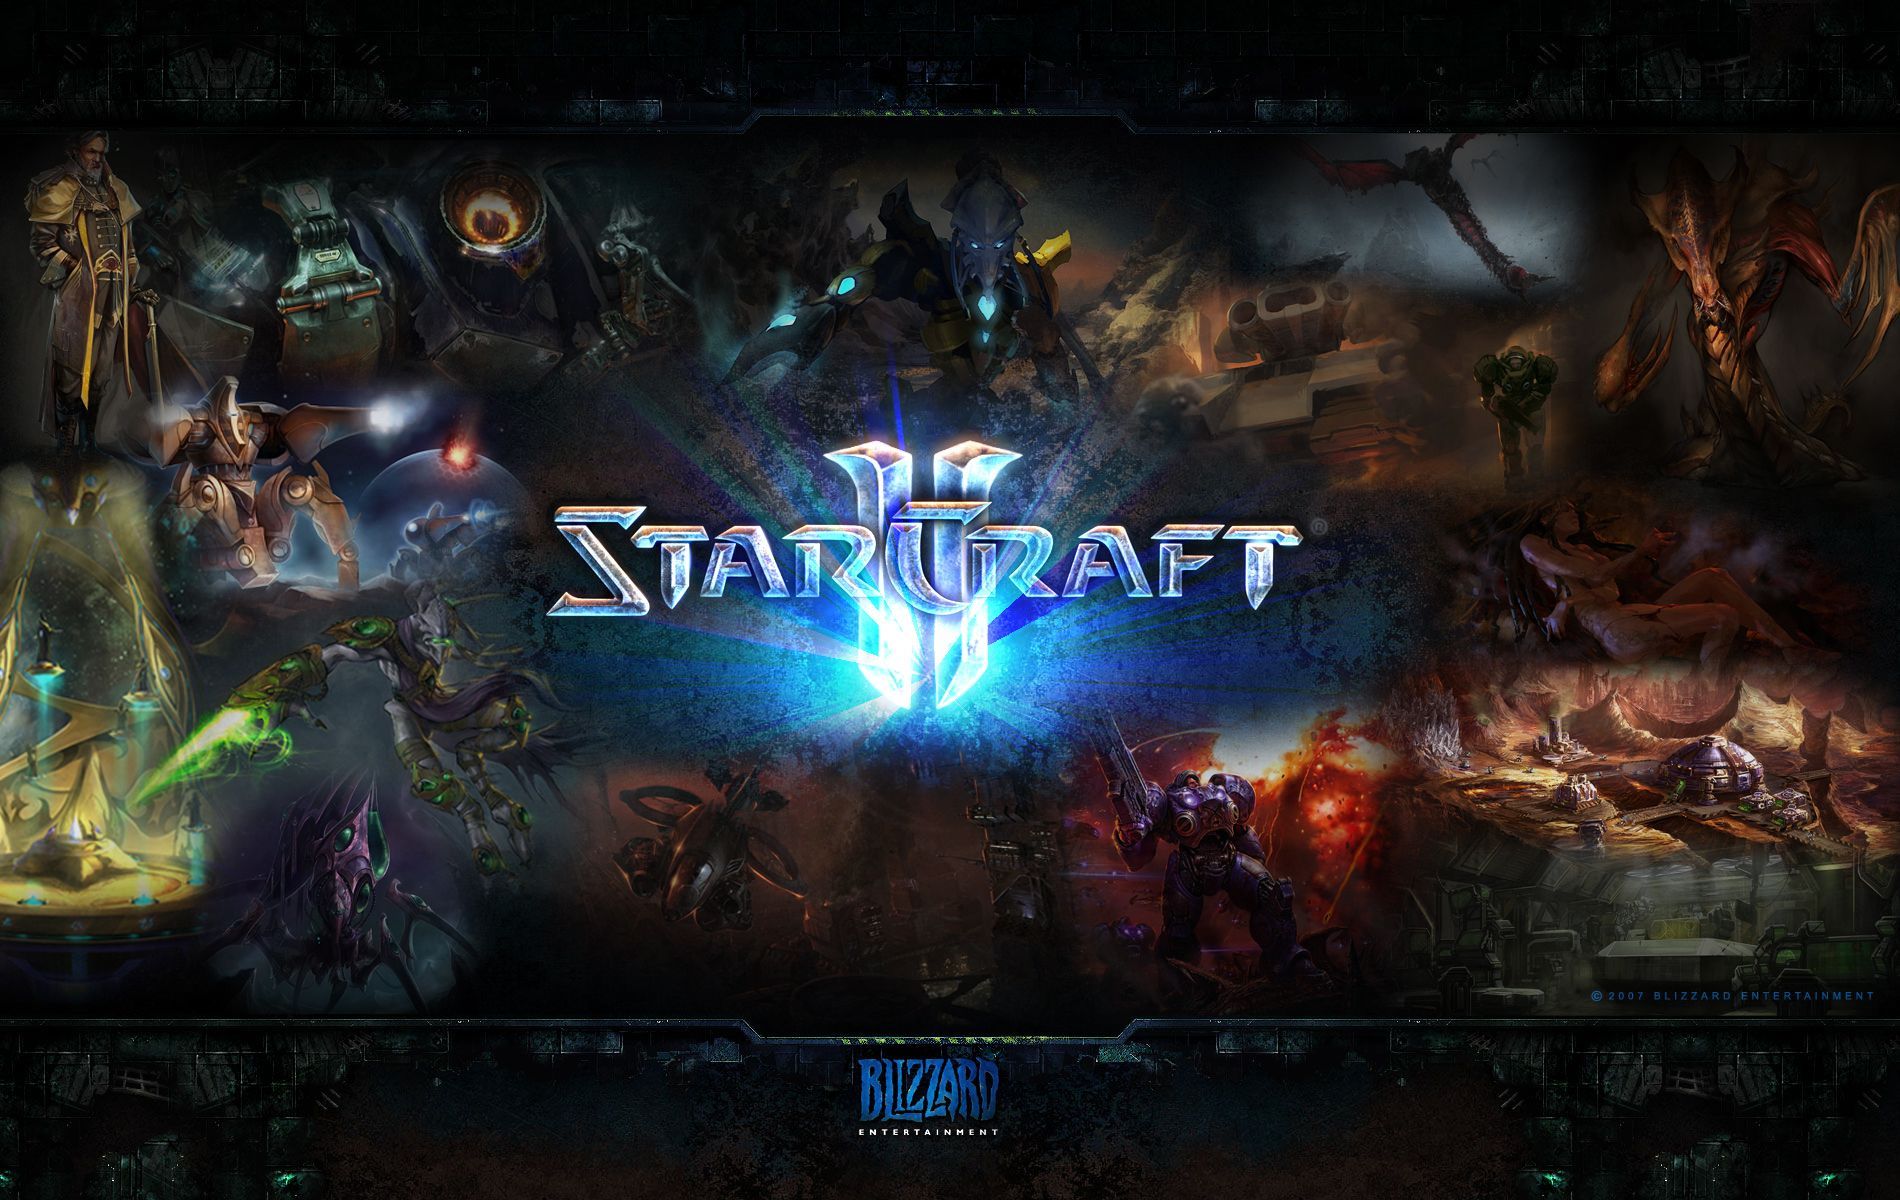 Starcraft-2-Wallpaper-Picture-Image-Dekstop.jpg